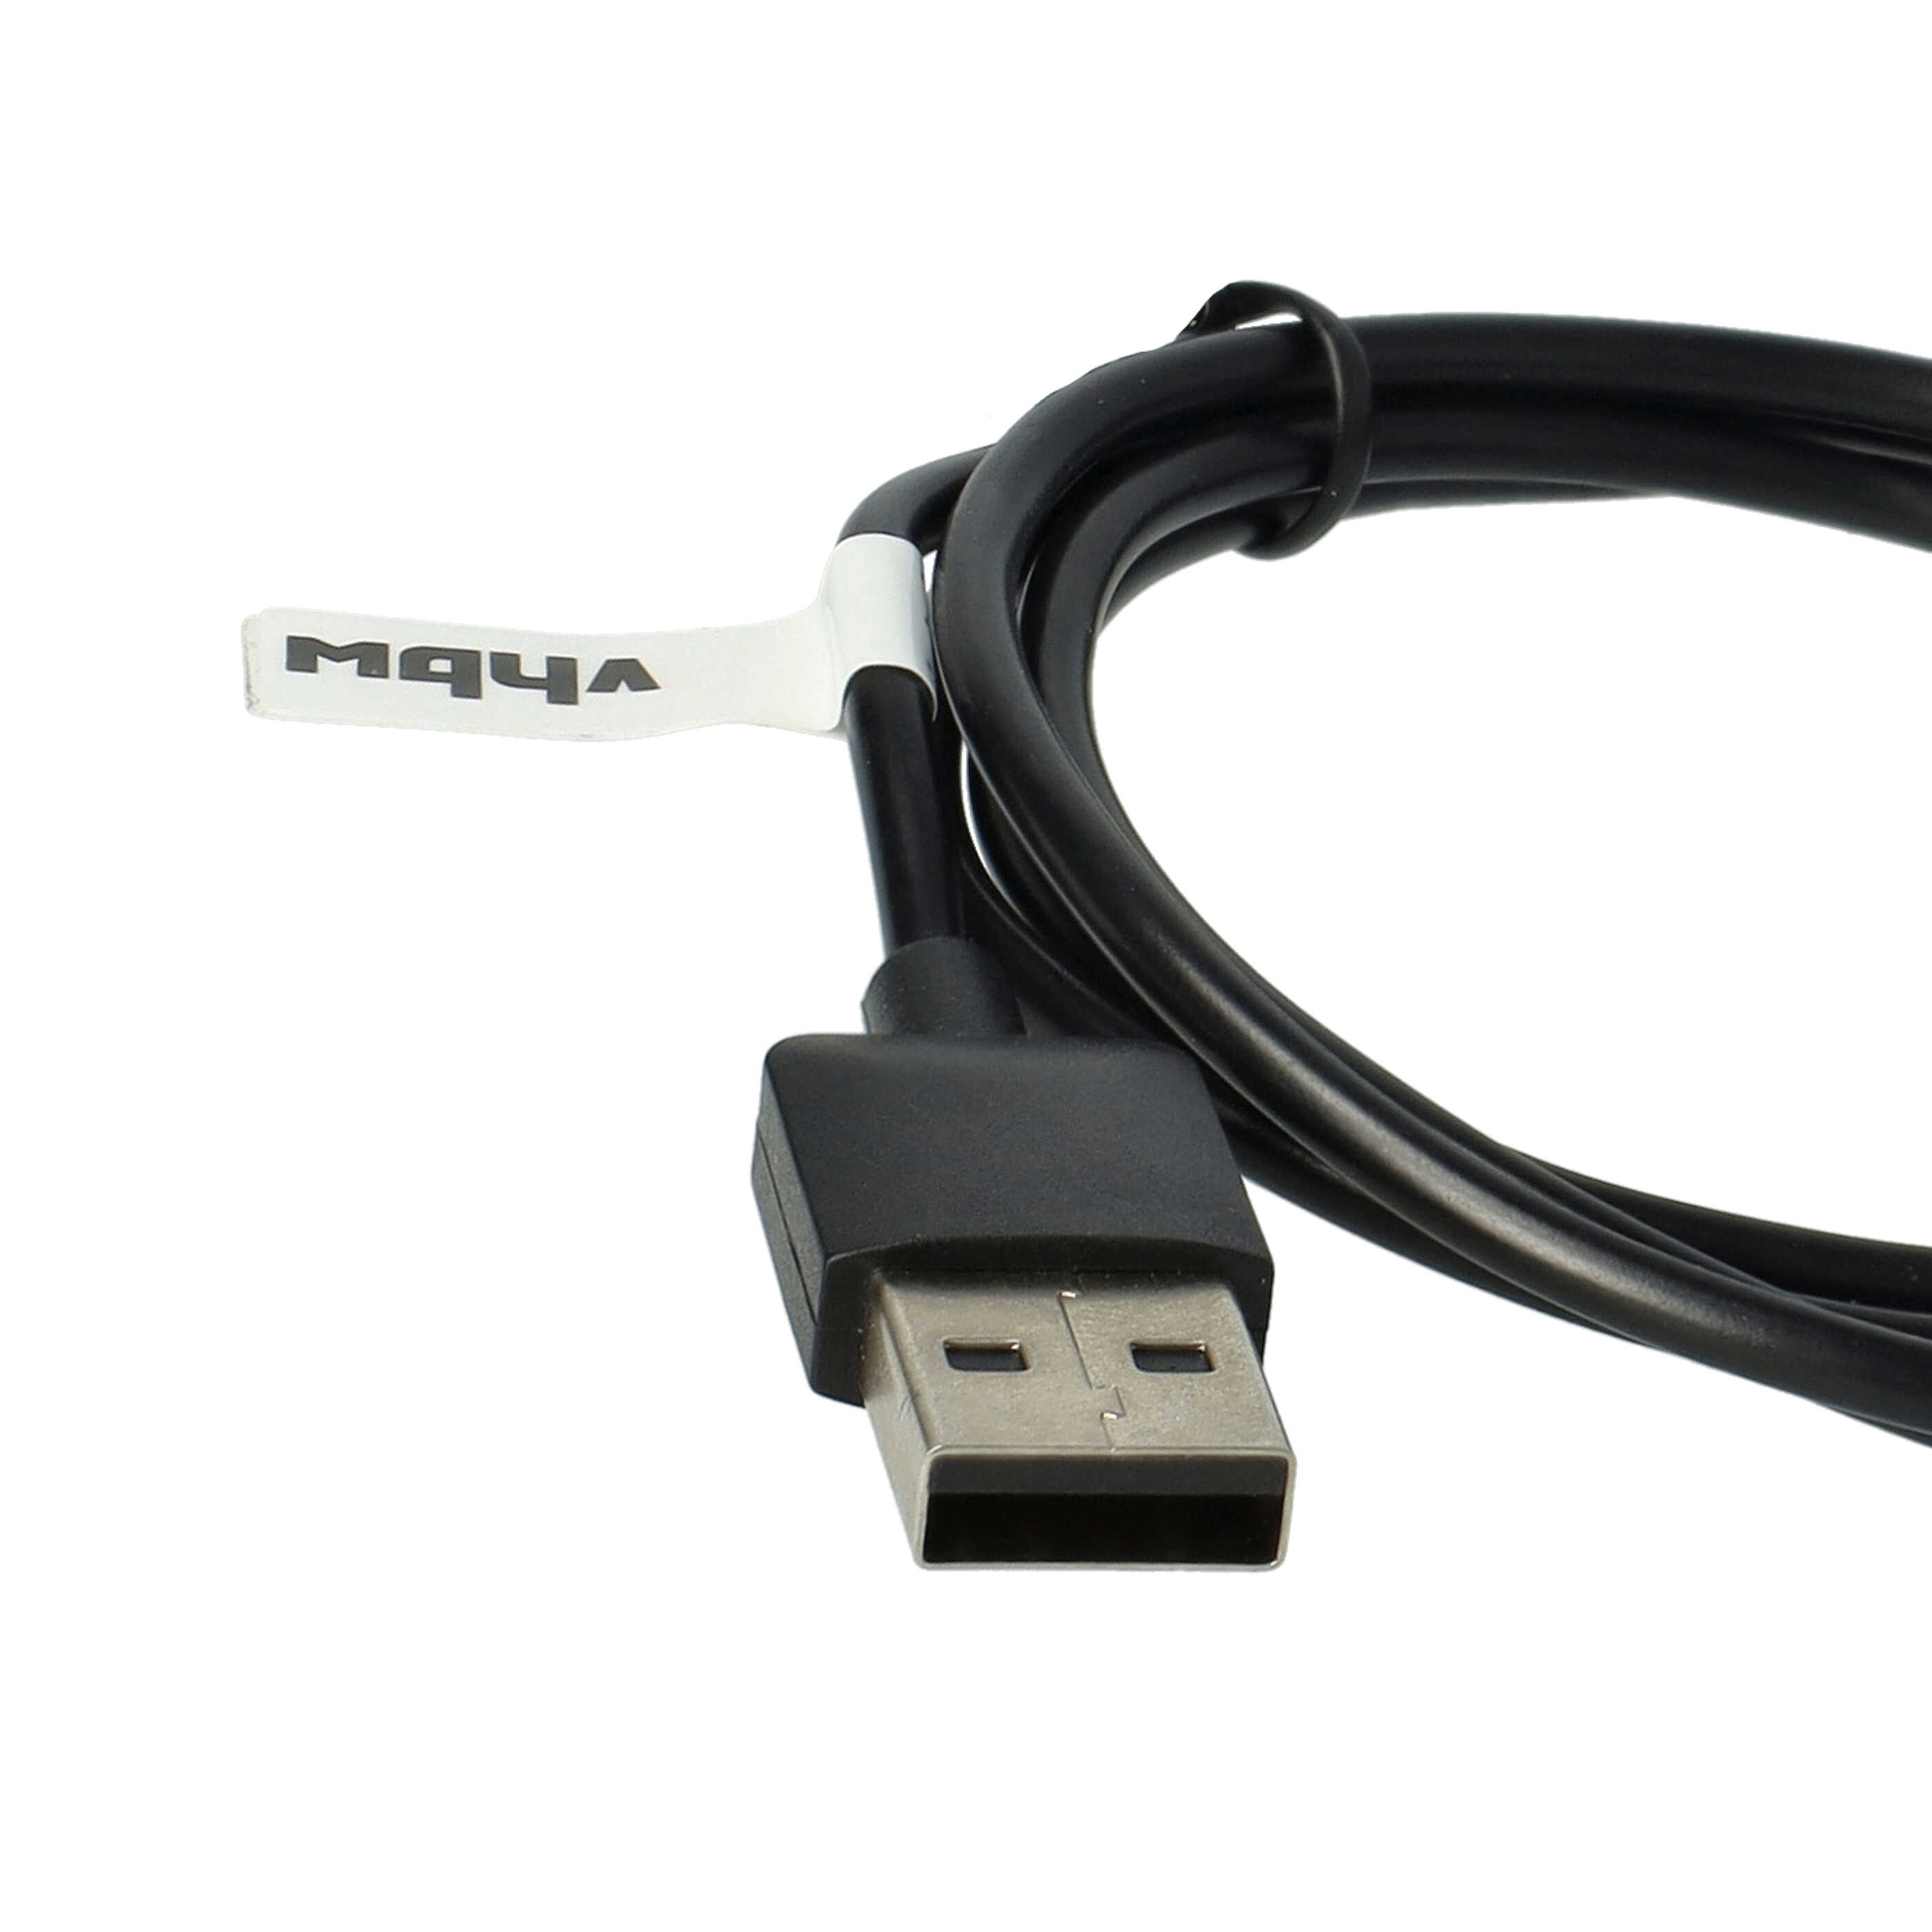 USB-Ladestation als Ersatz für Garmin 8013048 für Garmin Smartwatch - Ladeschale + Ladekabel, 100 cm